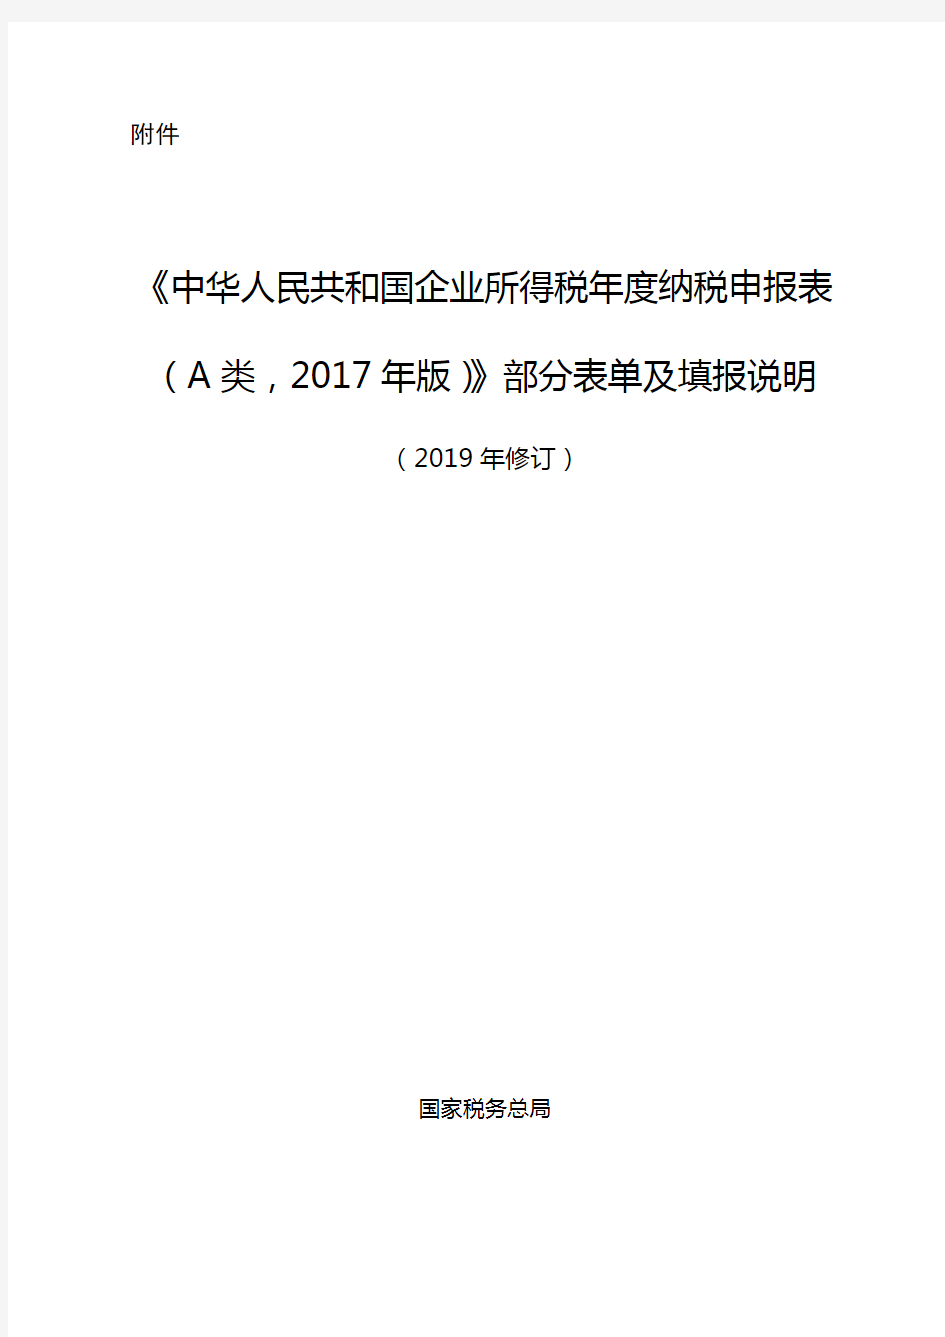 《中华人民共和国企业所得税年度纳税申报表(A类,2017年版)》部分表单及填报说明(2019年修订)